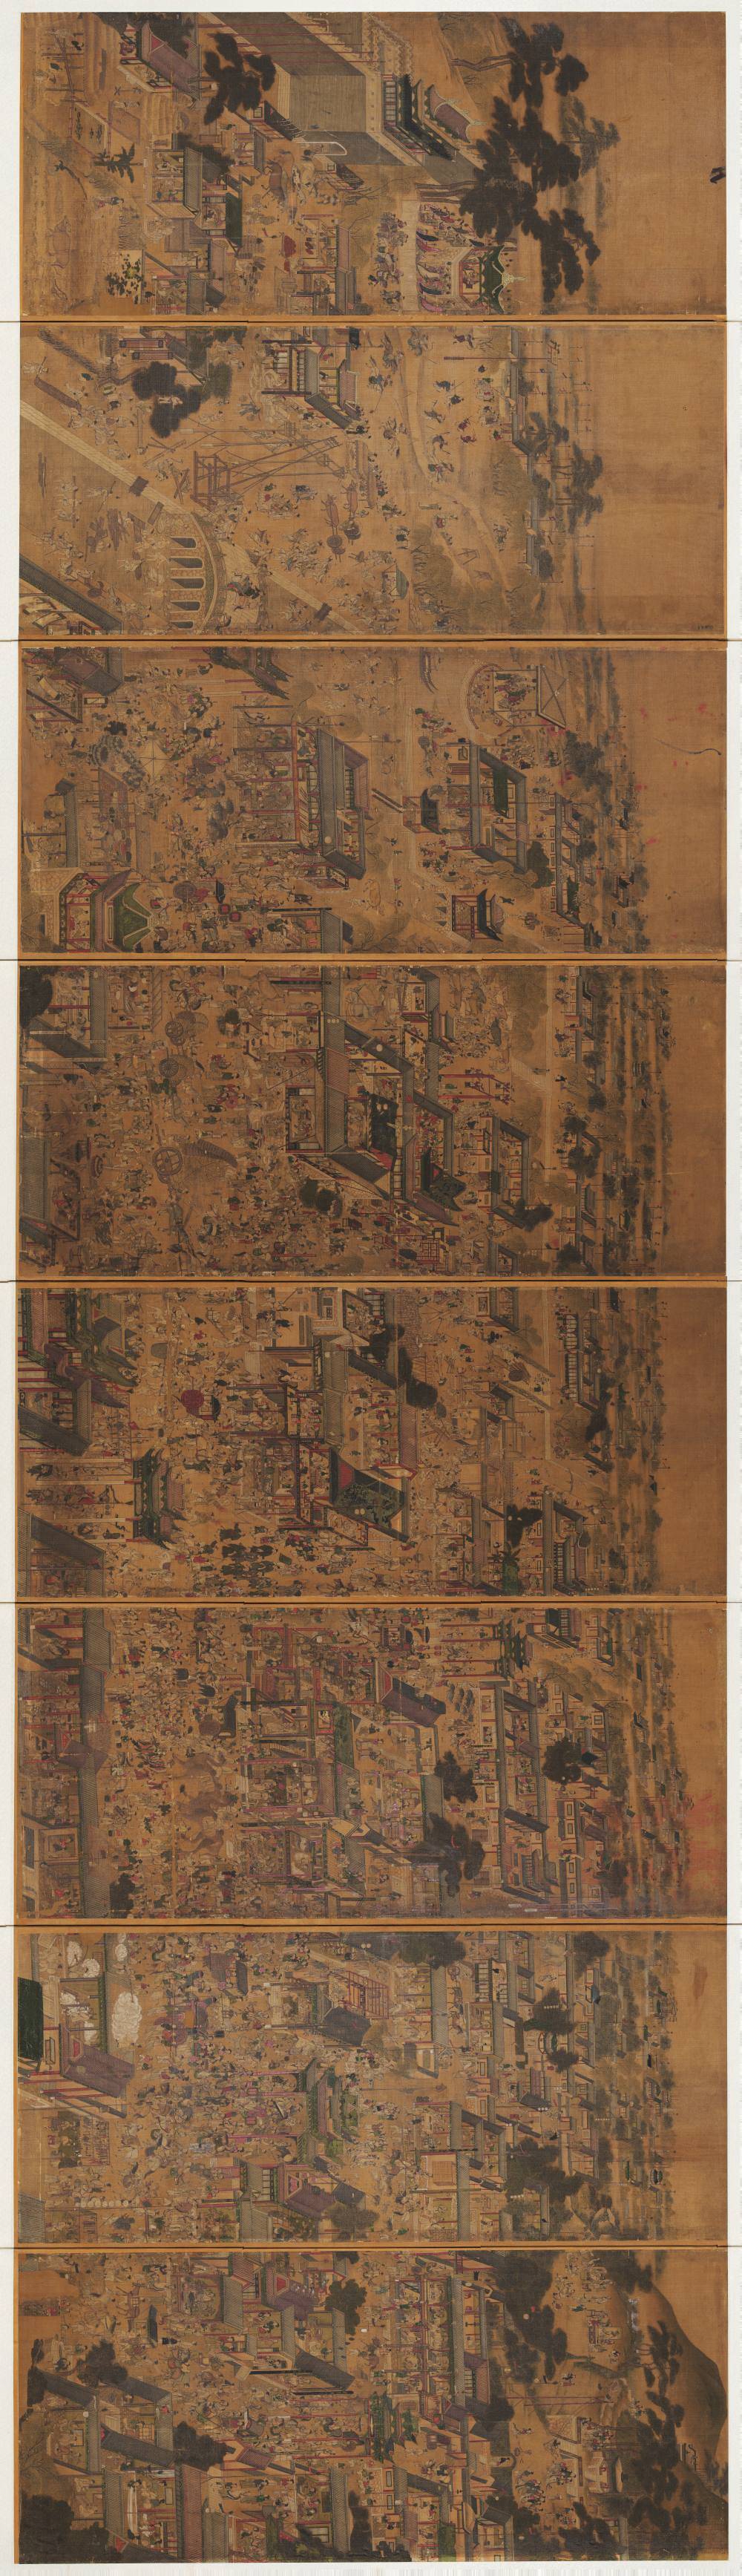 太平城市图.绢本设色（各113.6x49.1厘米）91471X26359像素.韩国国立中央博物馆藏